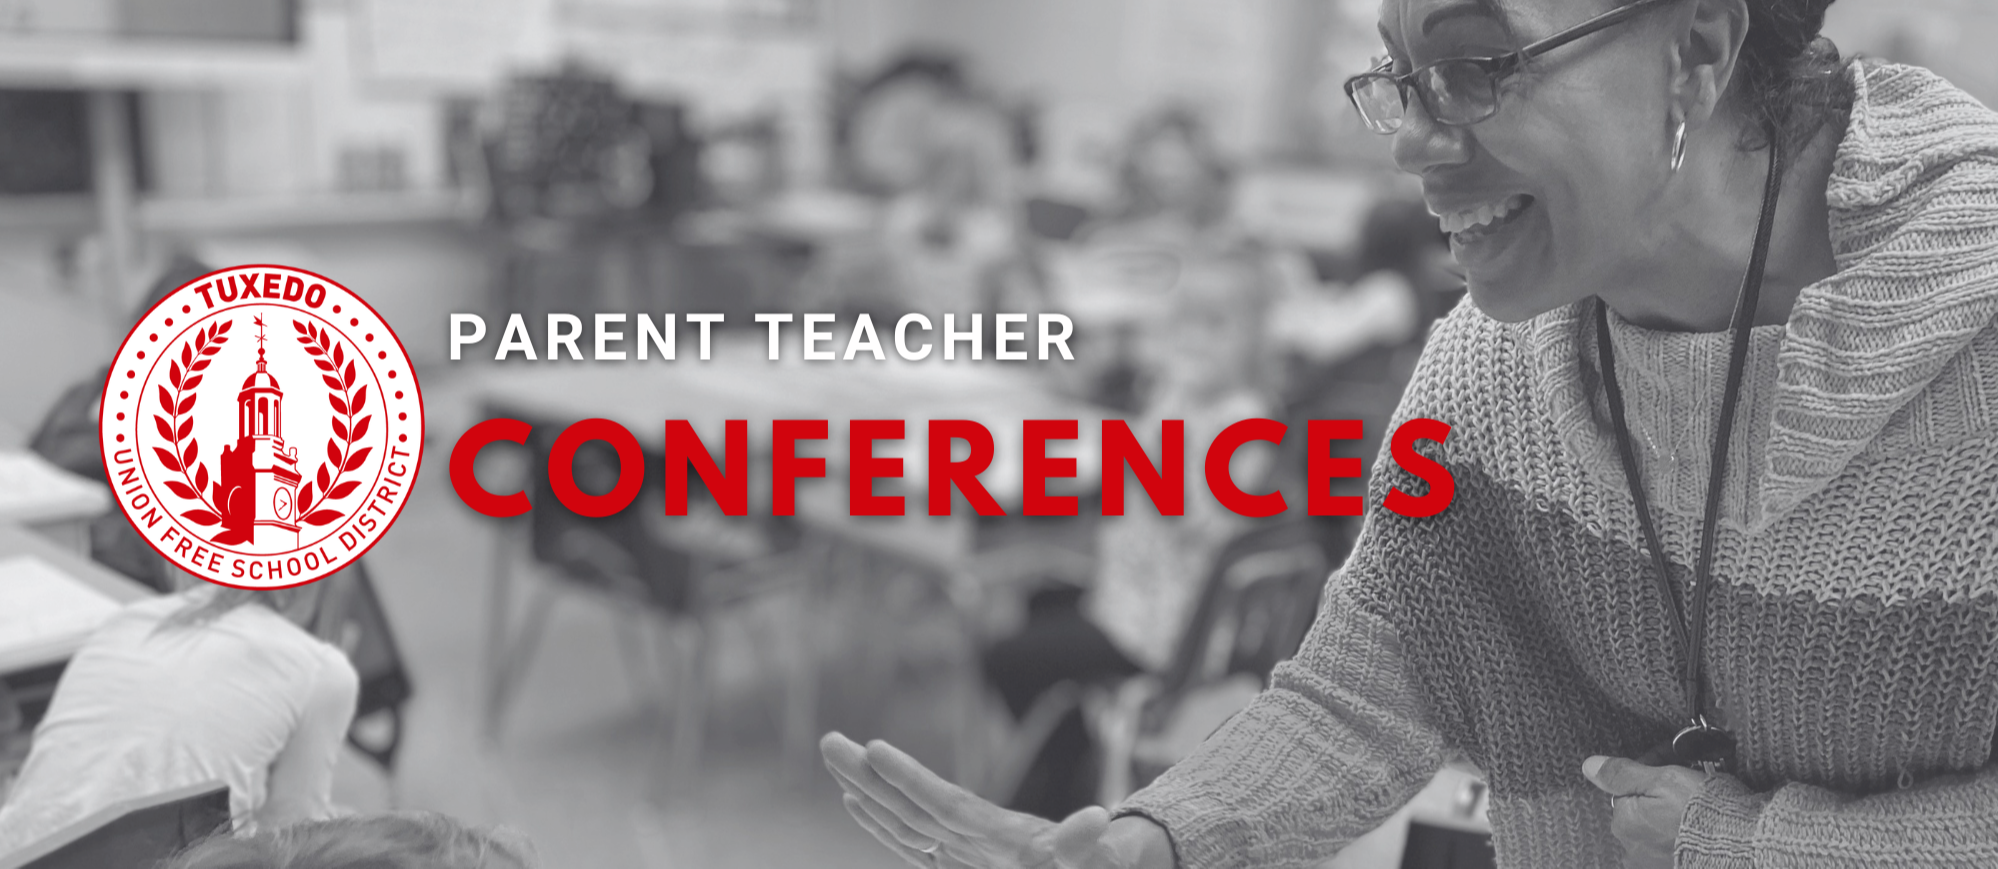 Parent Teacher Conference Image